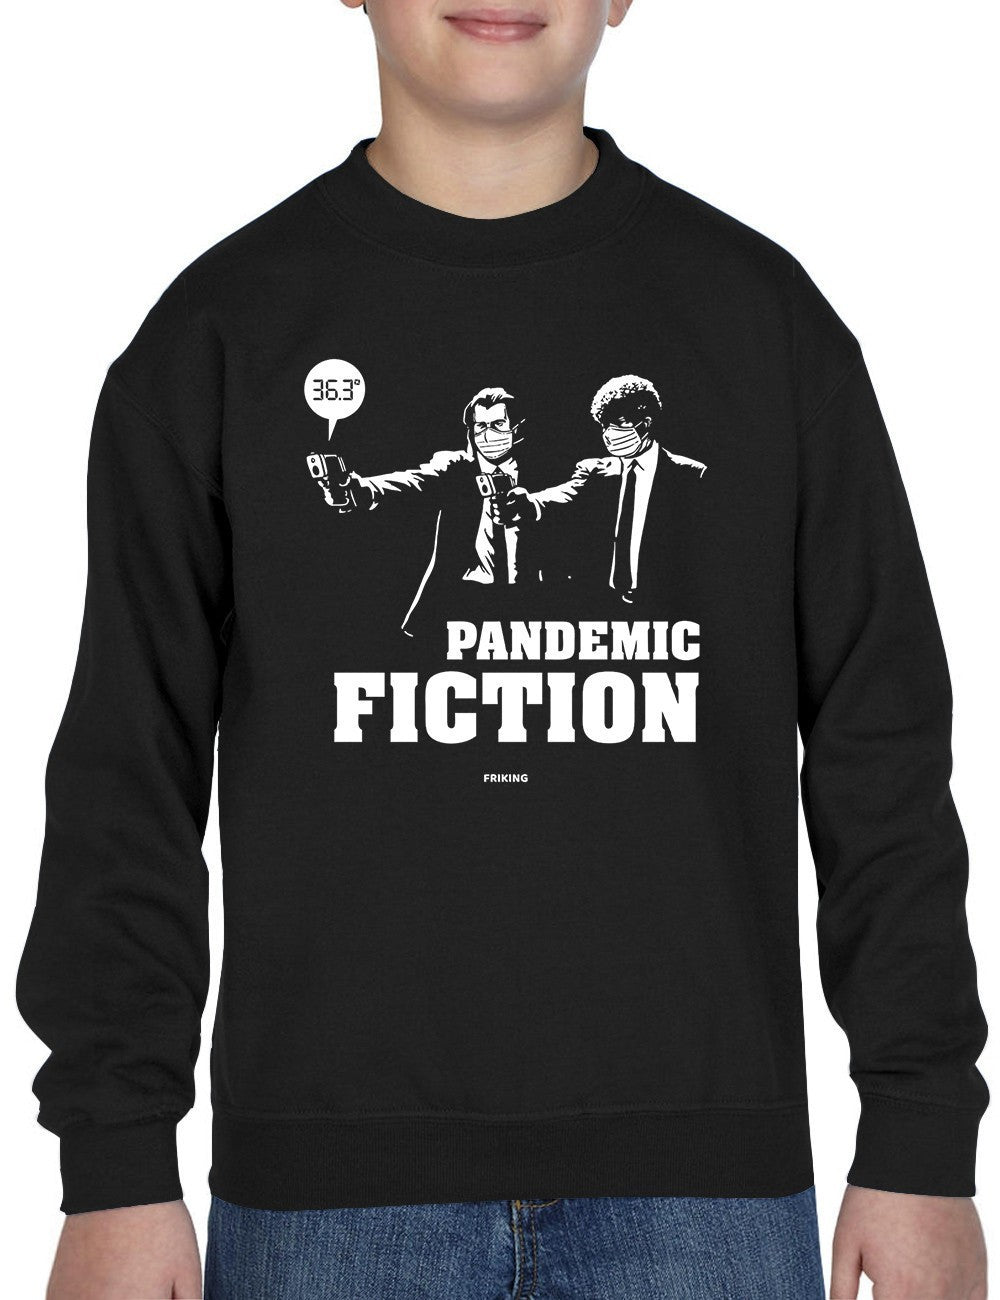  Pandemic Fiction